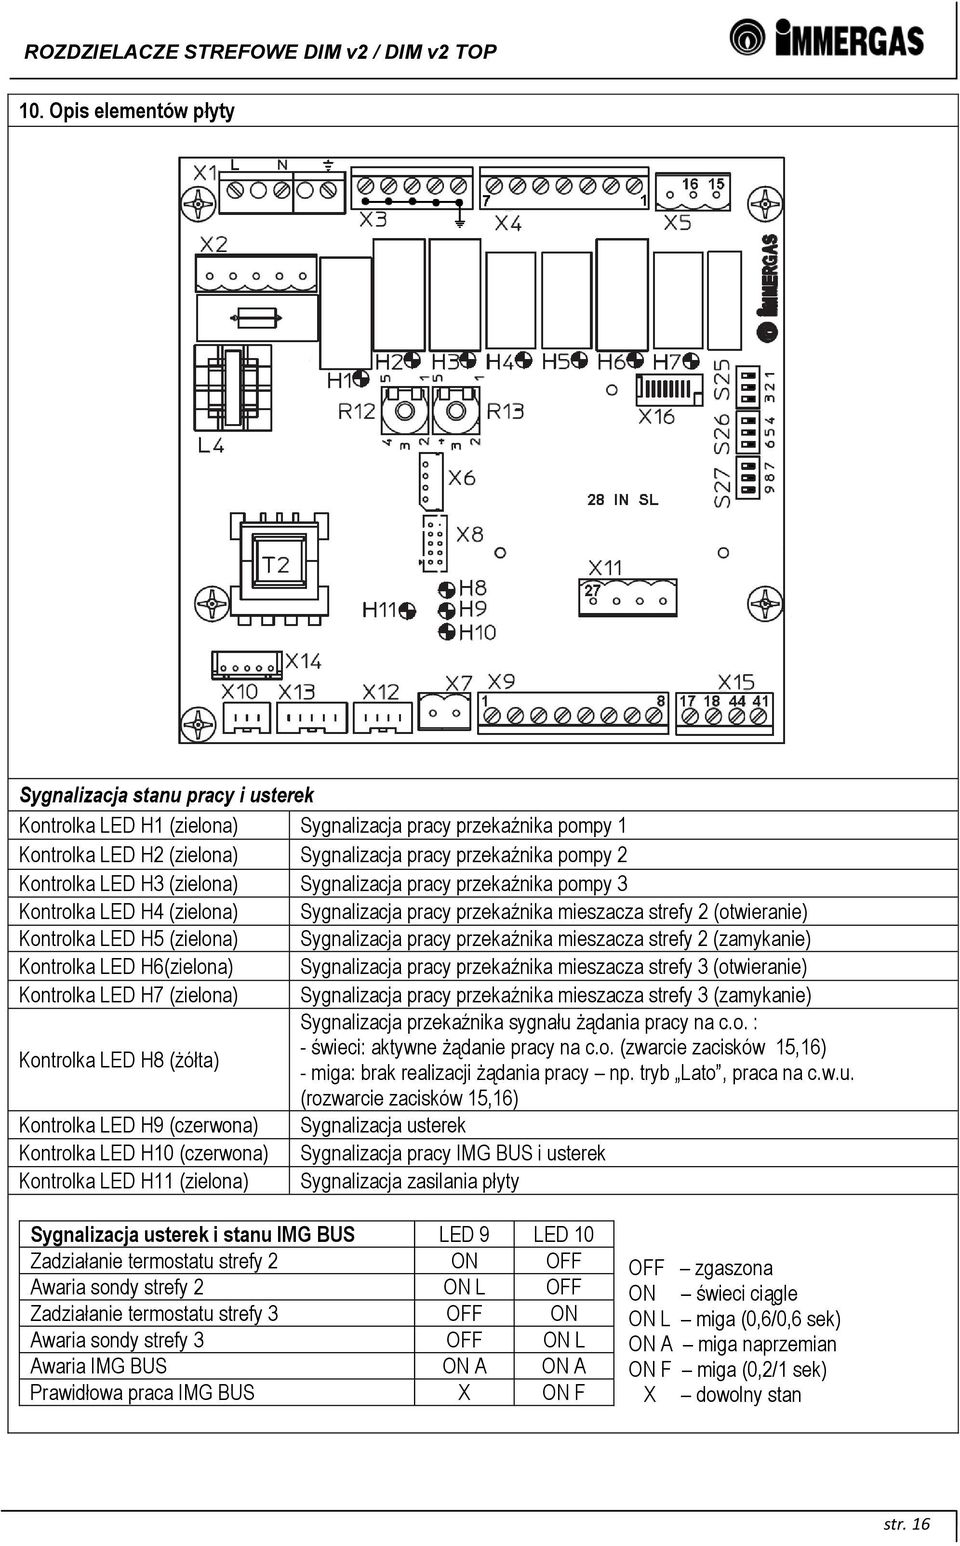 pracy przekaźnika mieszacza strefy 2 (zamykanie) Kontrolka LED H6(zielona) Sygnalizacja pracy przekaźnika mieszacza strefy 3 (otwieranie) Kontrolka LED H7 (zielona) Sygnalizacja pracy przekaźnika